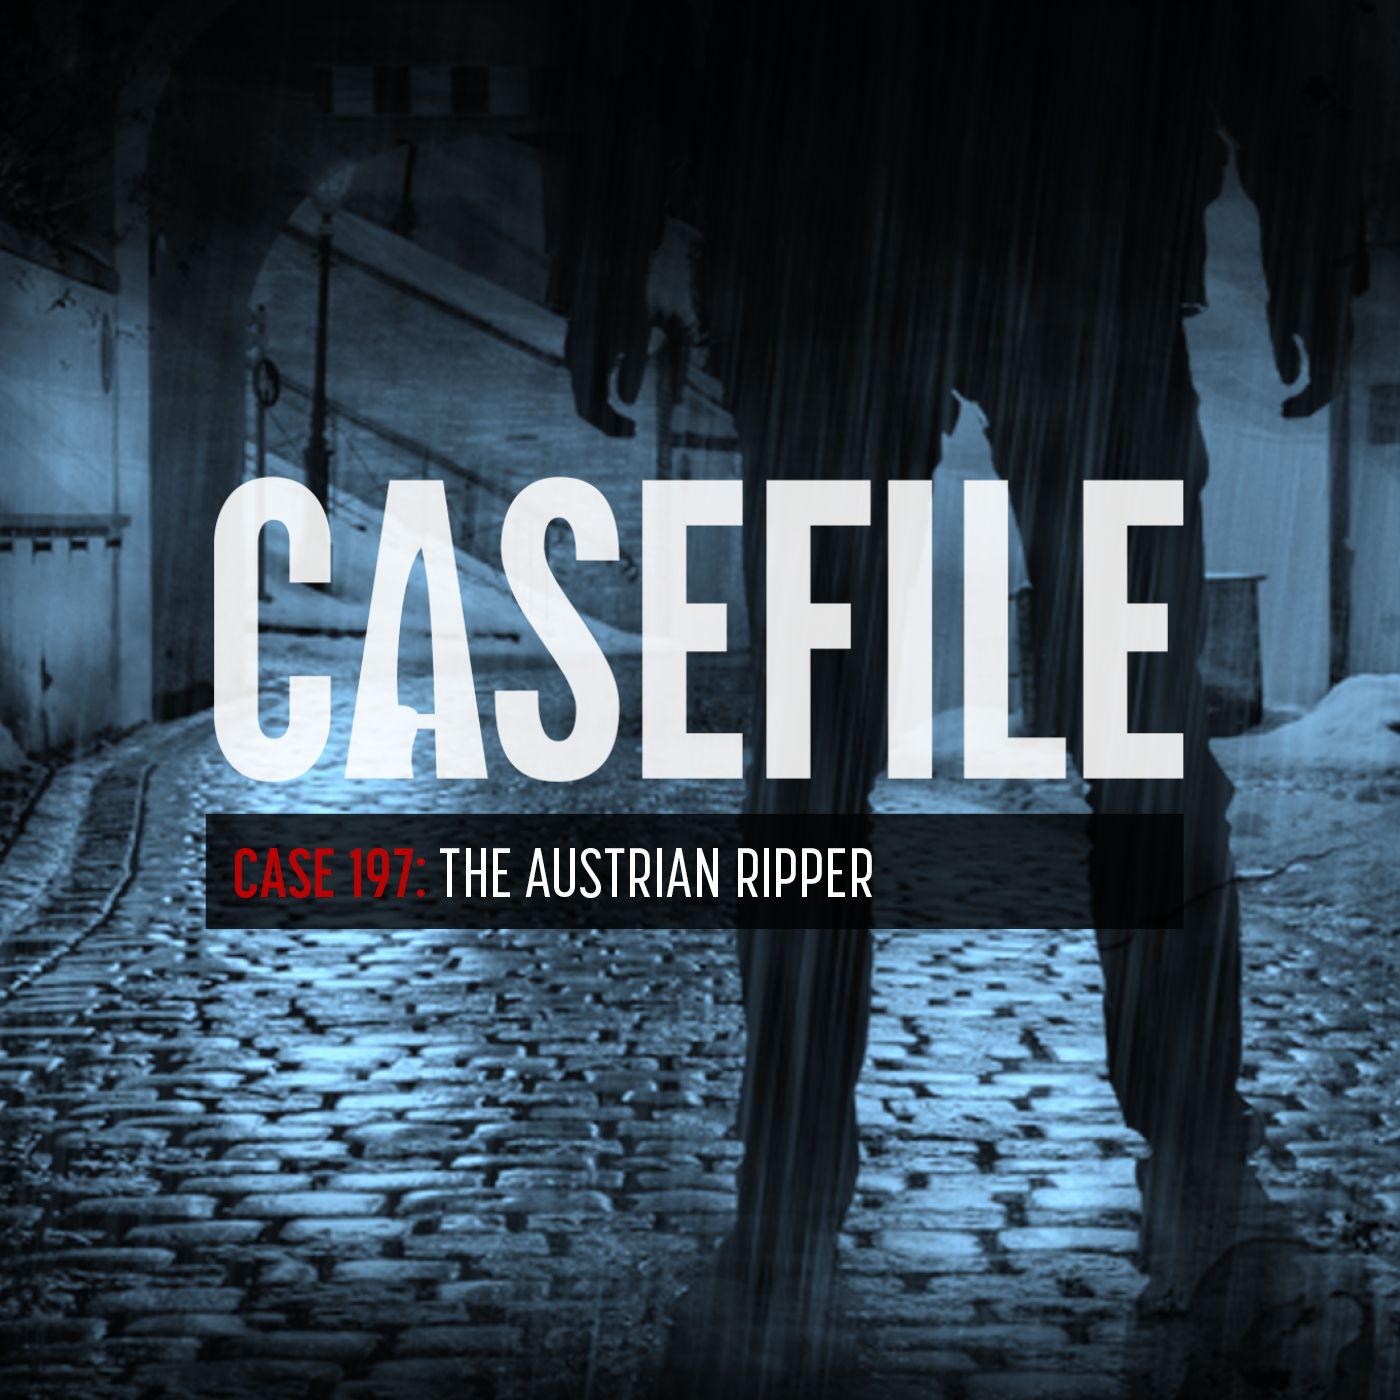 Case 197: The Austrian Ripper